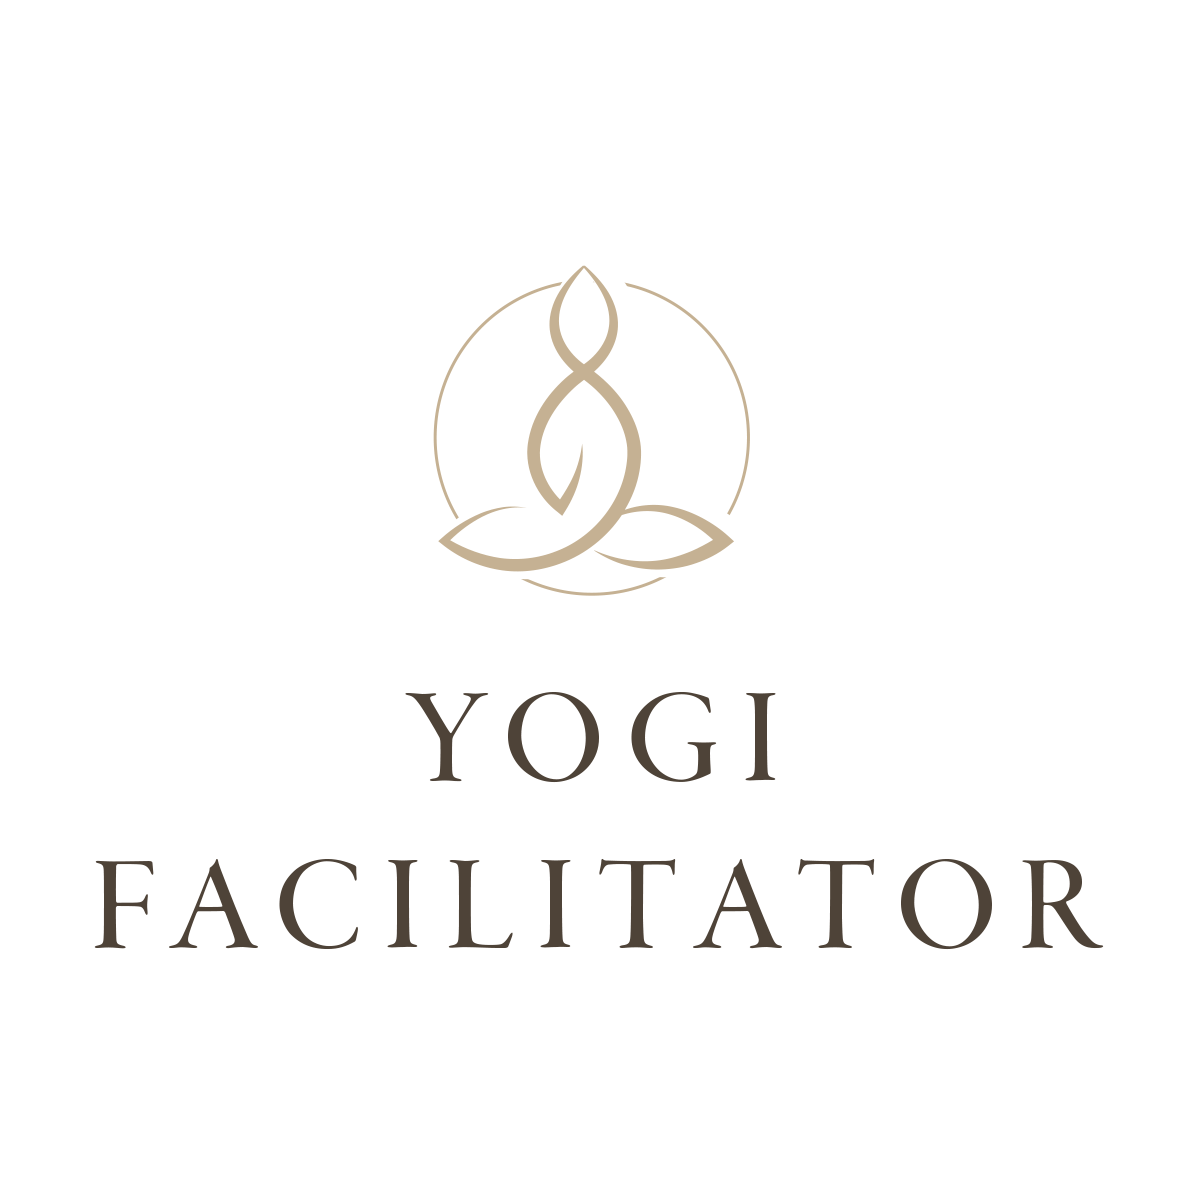 Yogi Logo - The Yogi Facilitator Leadership Training